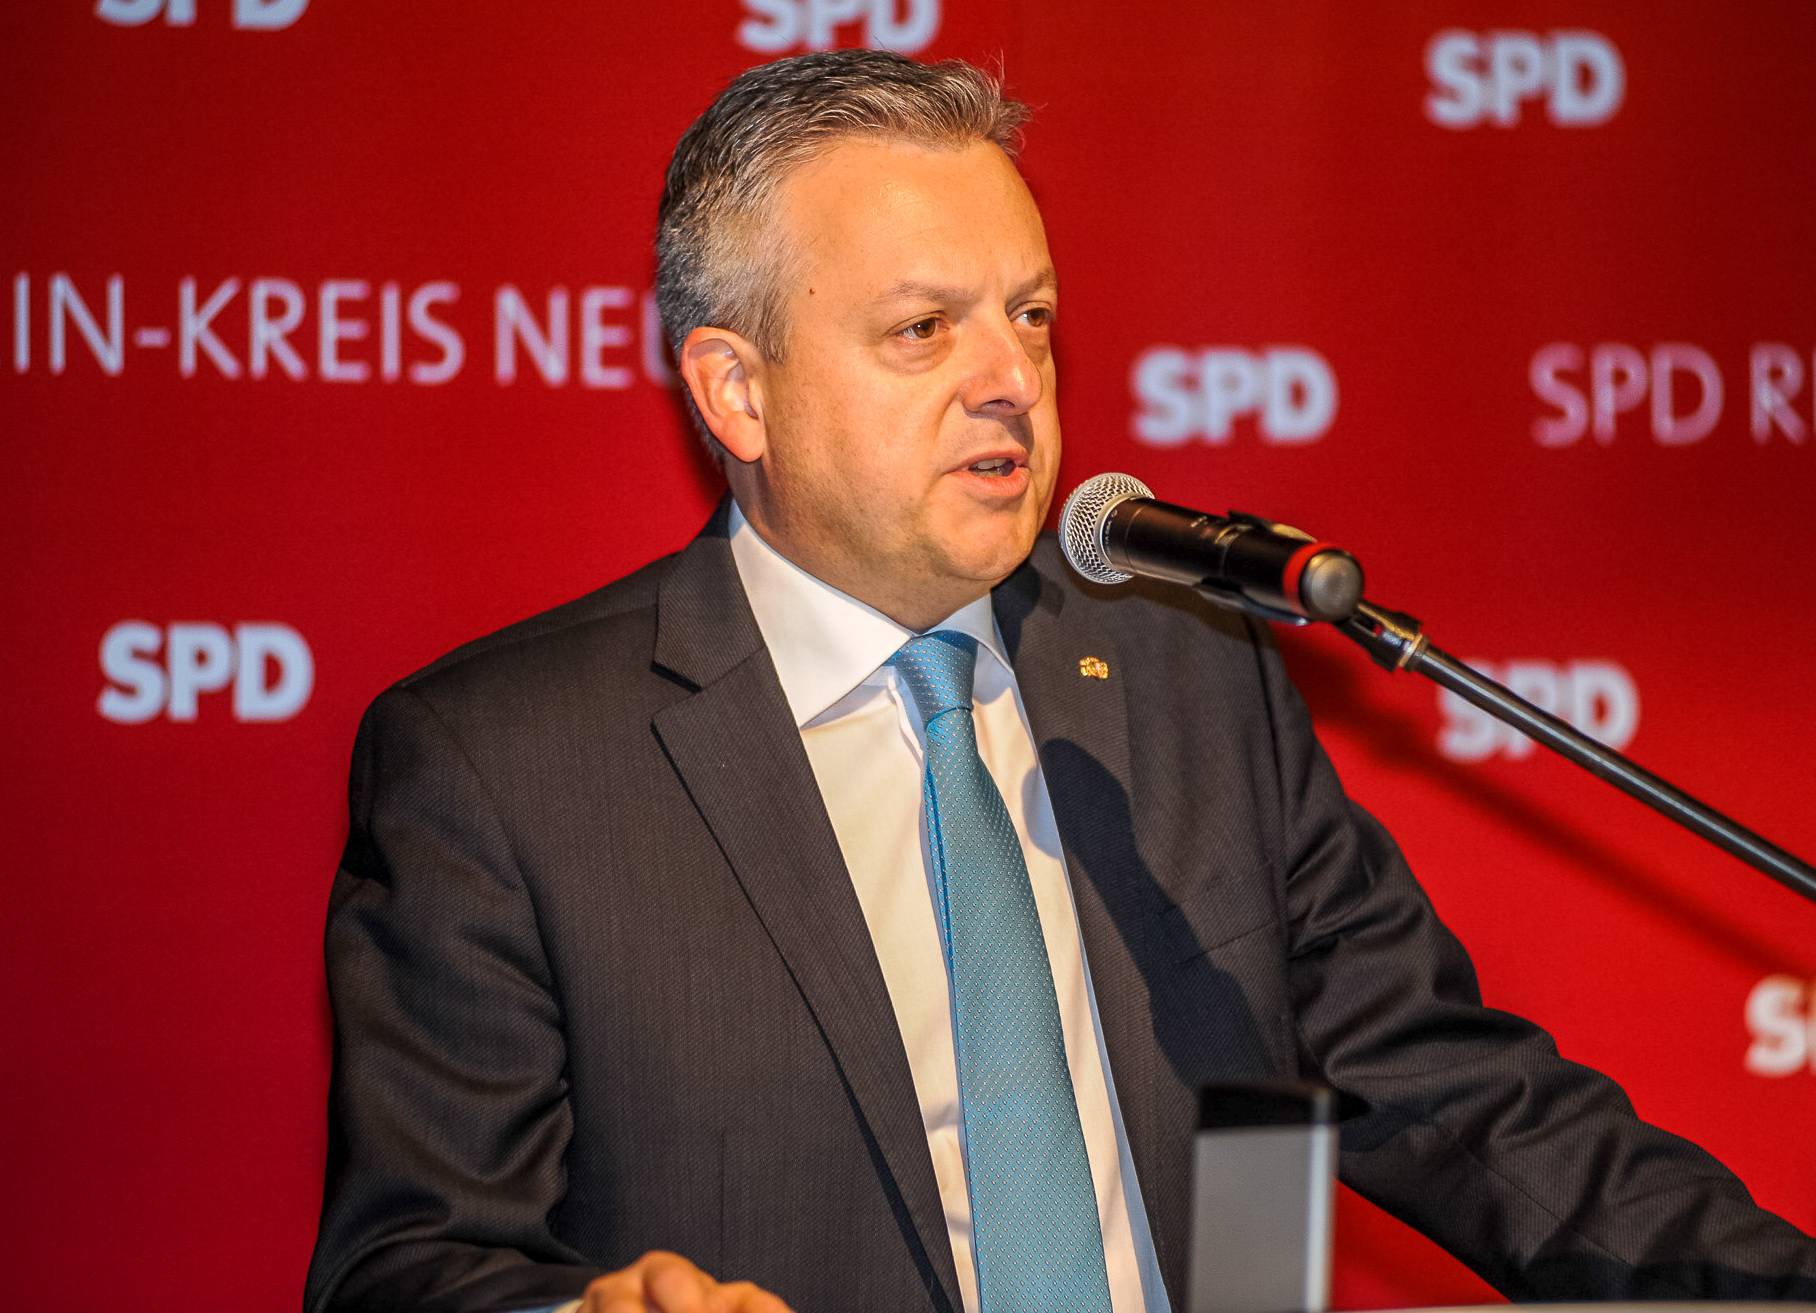  Arno Jansen, Fraktionsvorsitzender der SPD, freut sich über die bevorstehende Koalition 